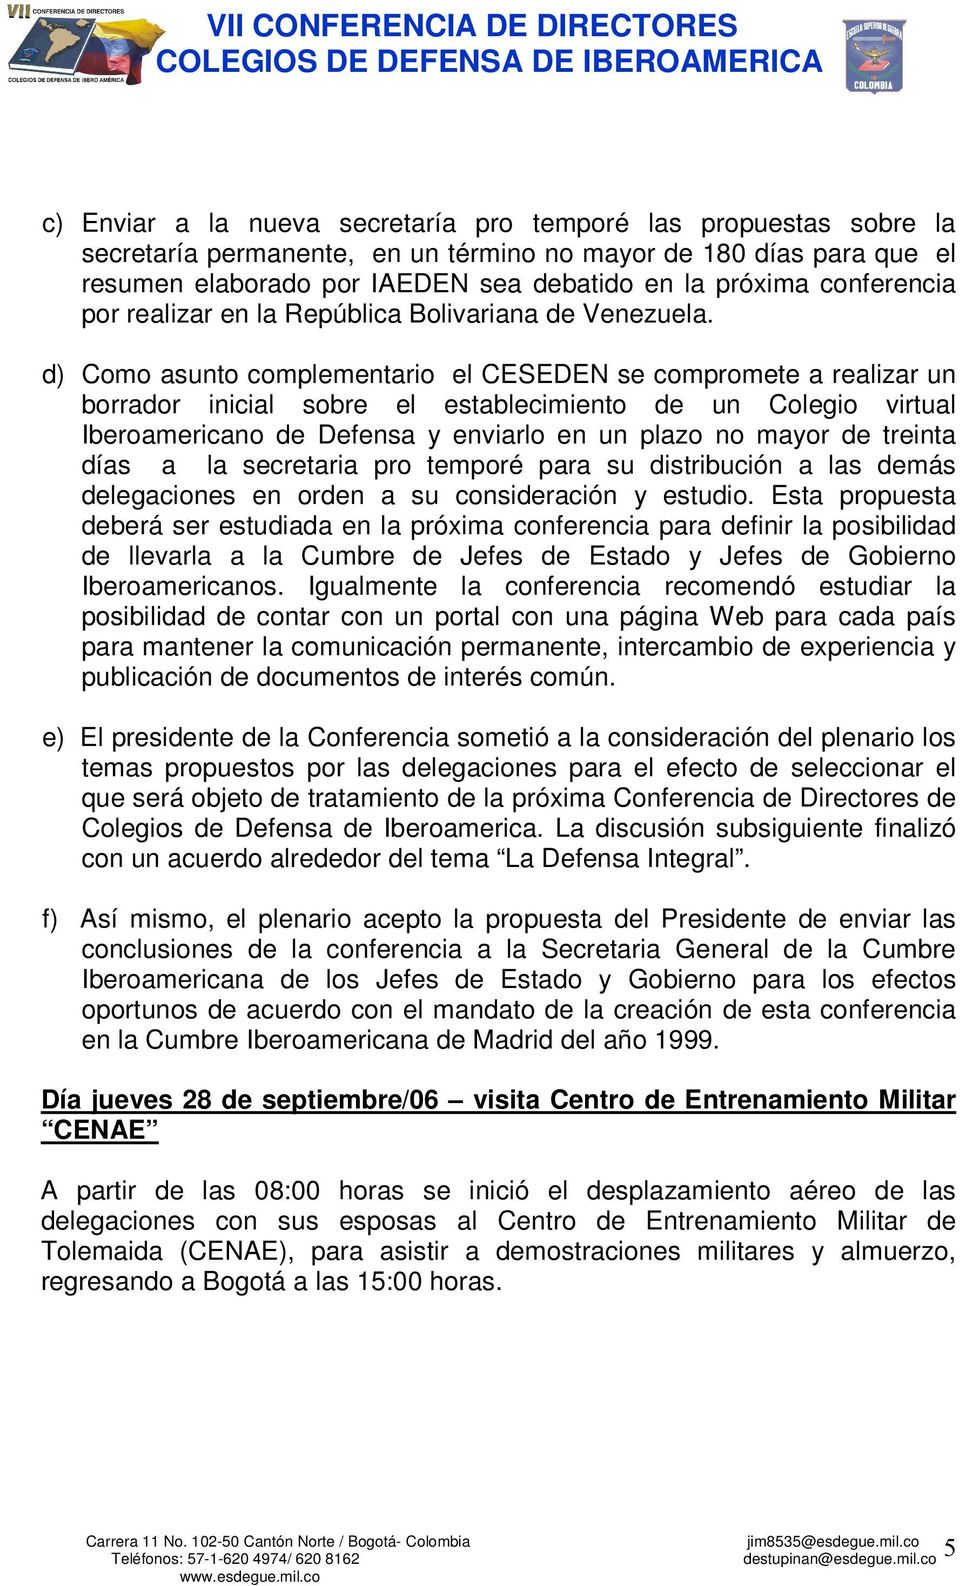 d) Como asunto complementario el CESEDEN se compromete a realizar un borrador inicial sobre el establecimiento de un Colegio virtual Iberoamericano de Defensa y enviarlo en un plazo no mayor de